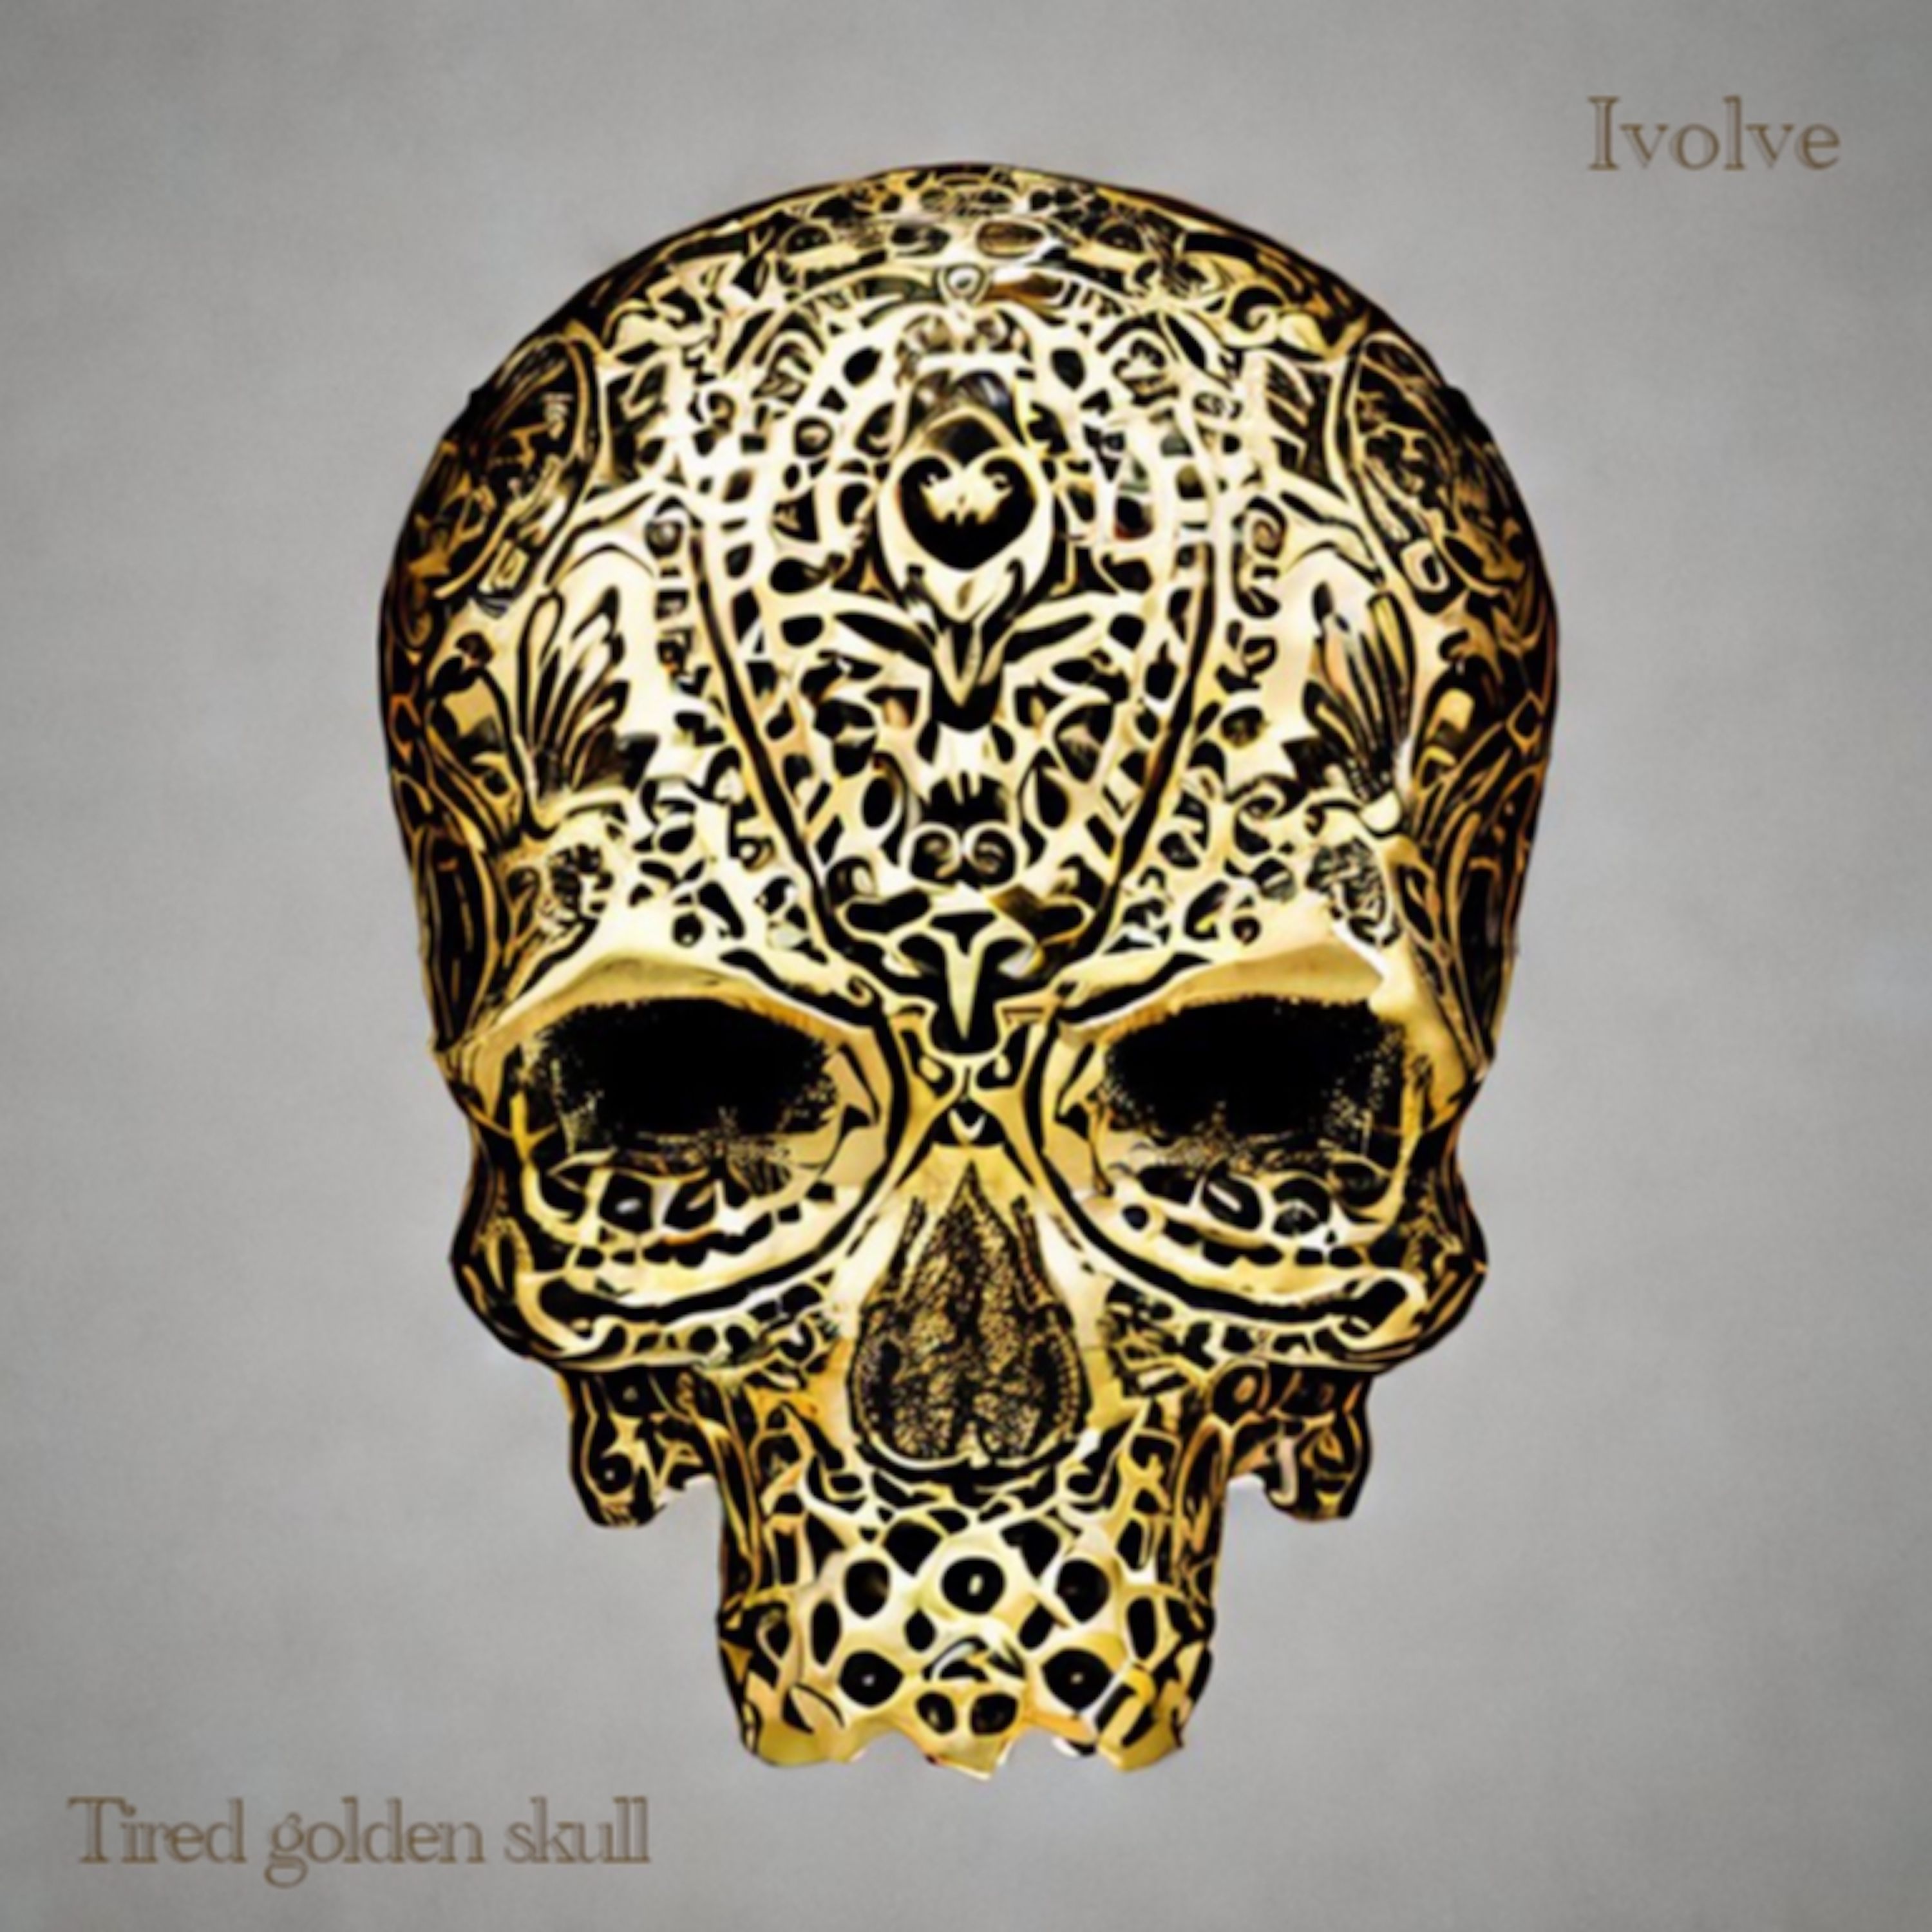 Ivolve - Tired Golden Skull front cover